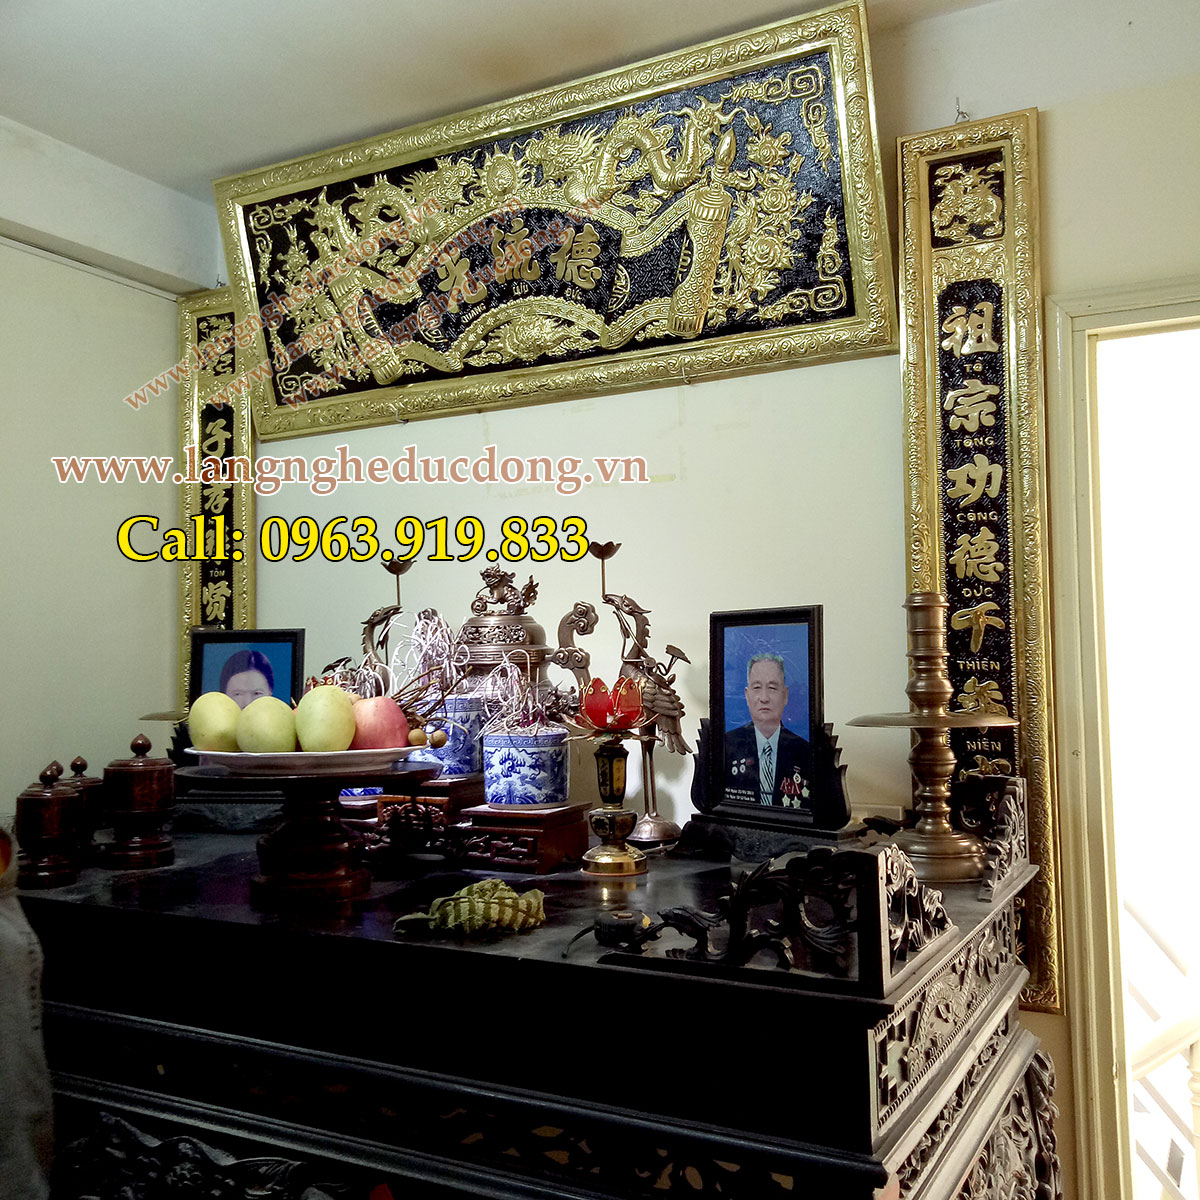 langngheducdong.vn -bộ đồ thờ cúng đồng vàng, đỉnh đồng, hạc đồng, đại tự câu đối